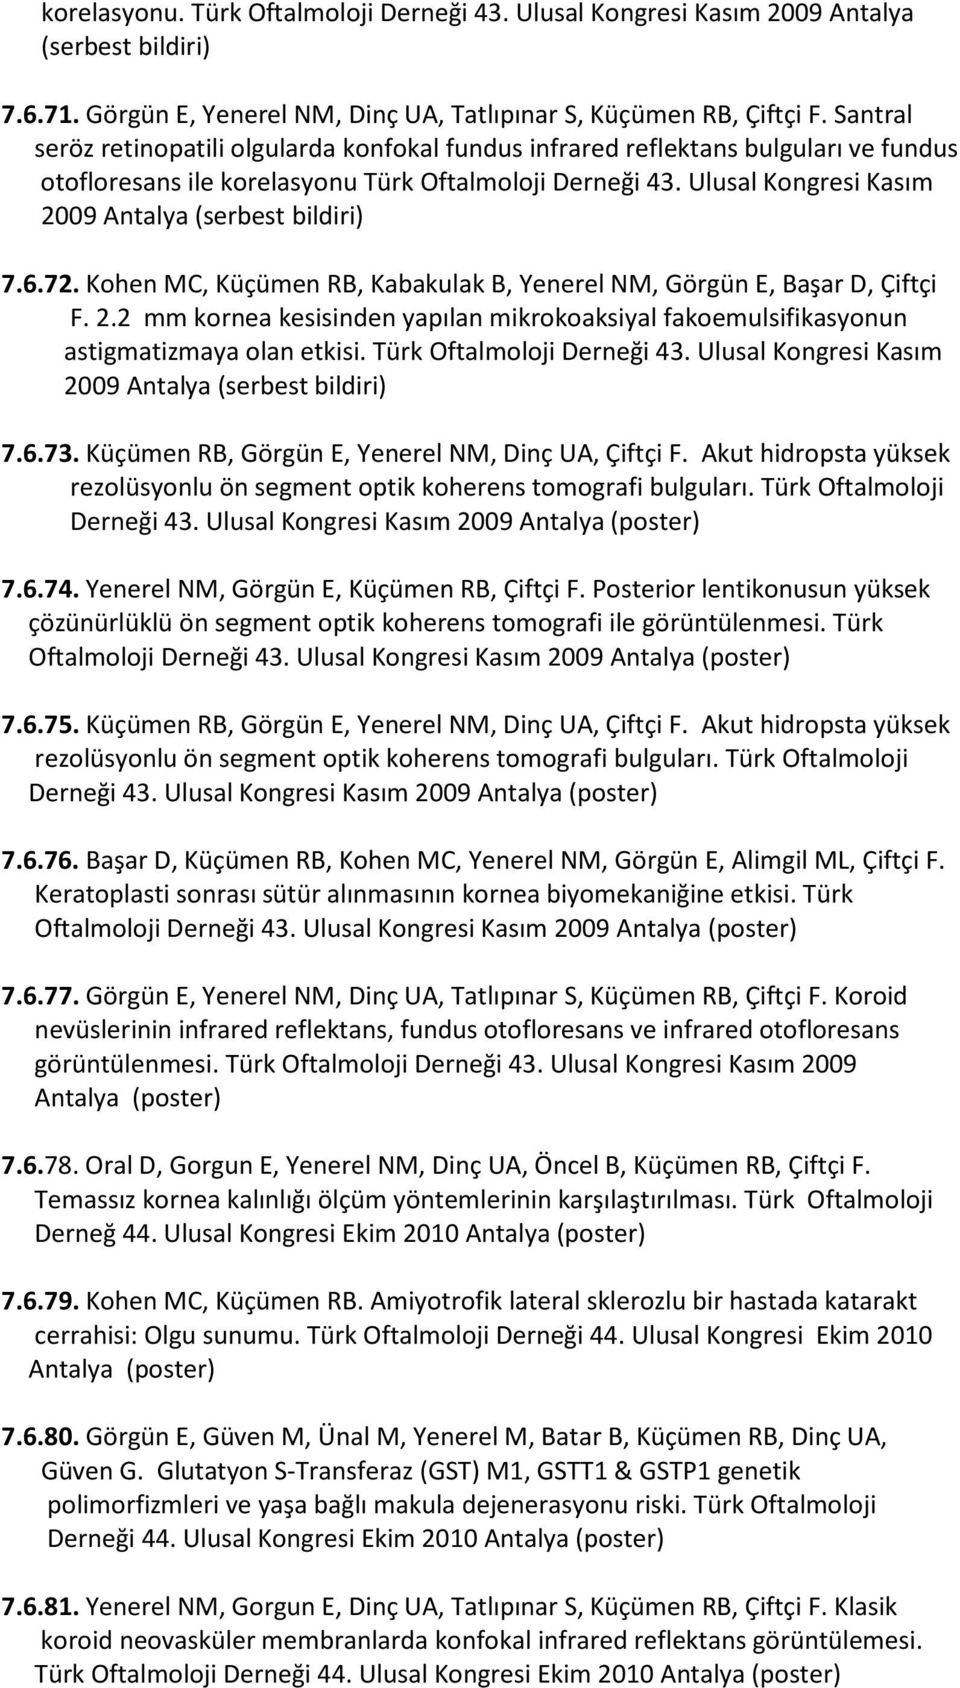 Ulusal Kongresi Kasım 2009 Antalya (serbest bildiri) 7.6.72. Kohen MC, Küçümen RB, Kabakulak B, Yenerel NM, Görgün E, Başar D, Çiftçi F. 2.2 mm kornea kesisinden yapılan mikrokoaksiyal fakoemulsifikasyonun astigmatizmaya olan etkisi.